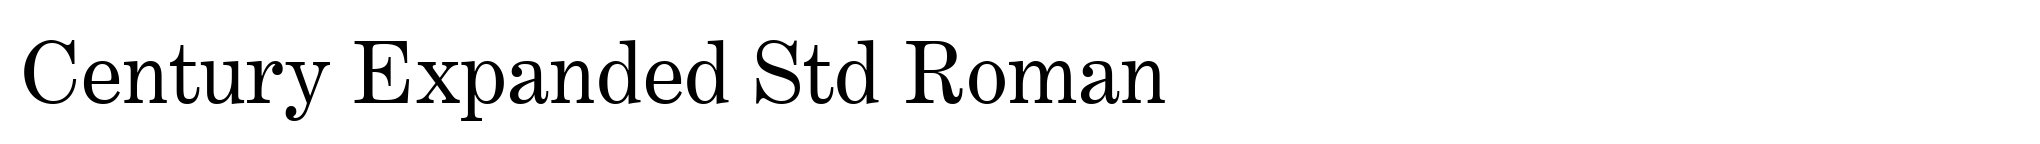 Century Expanded Std Roman image